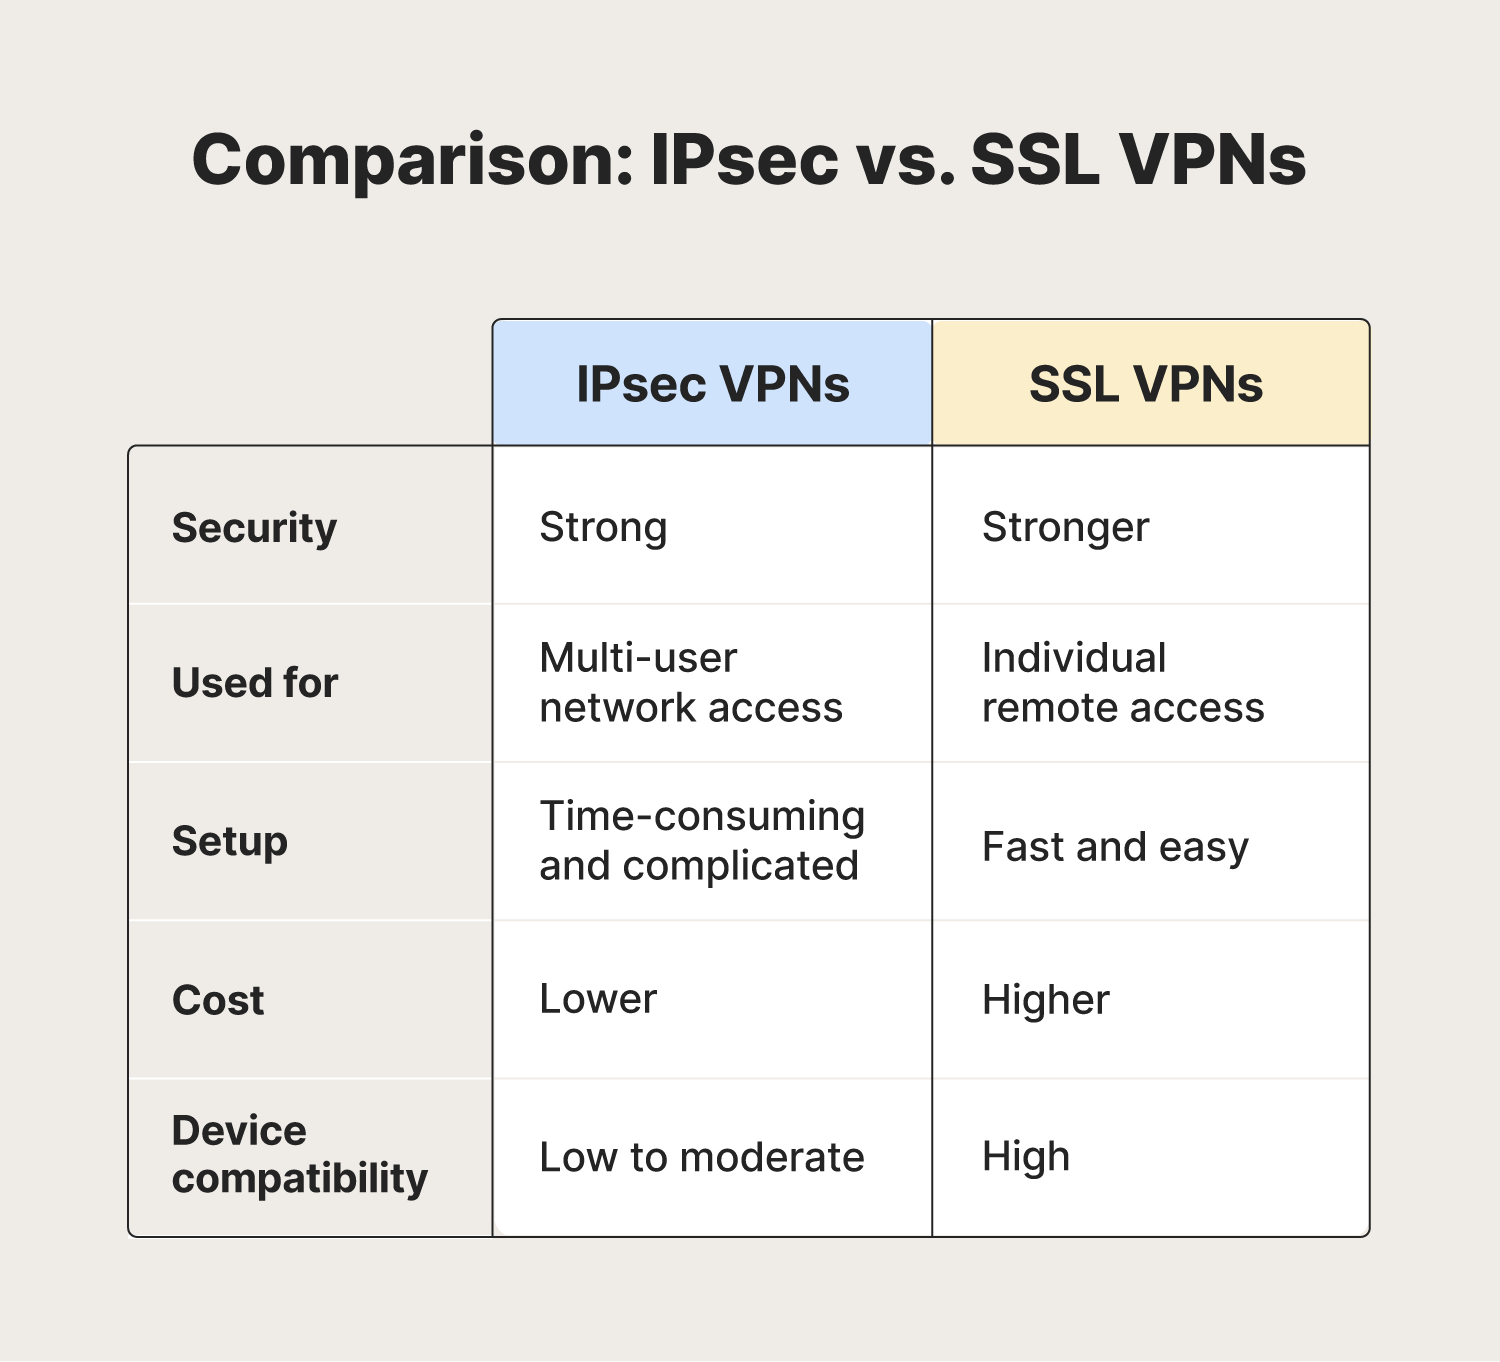 A comparison of IPsec vs. SSL VPNs.